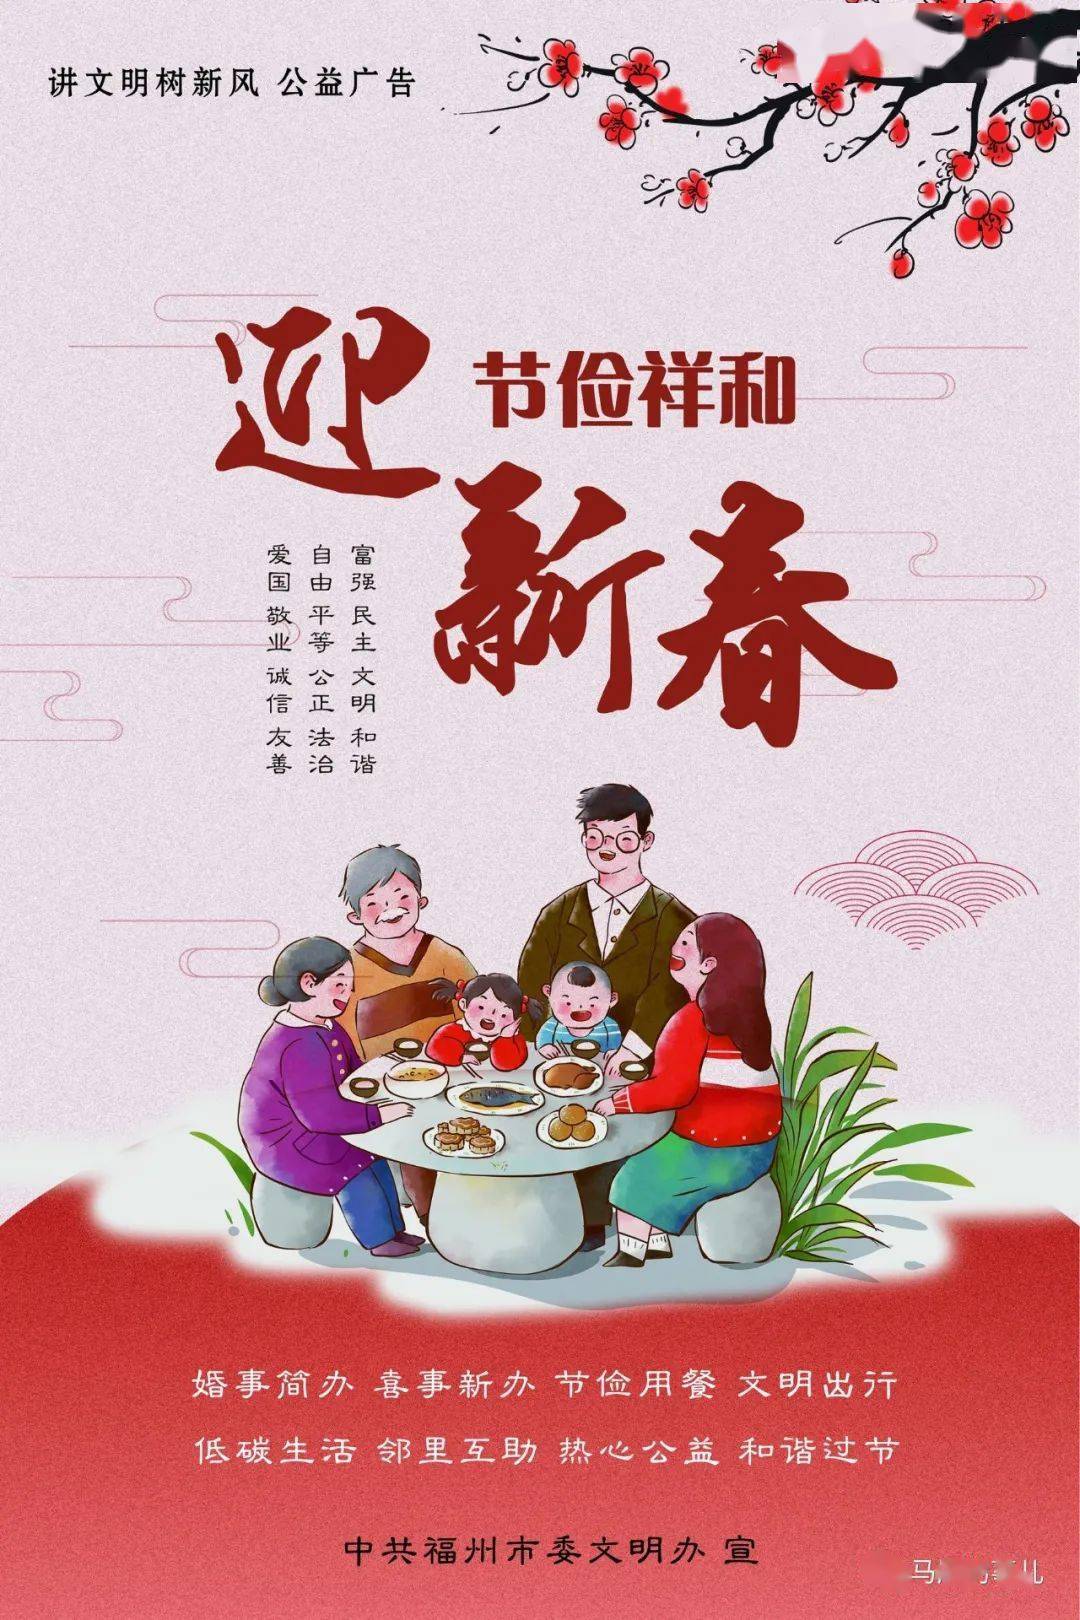 【网络中国节·春节】公益广告丨迎节俭祥和新春